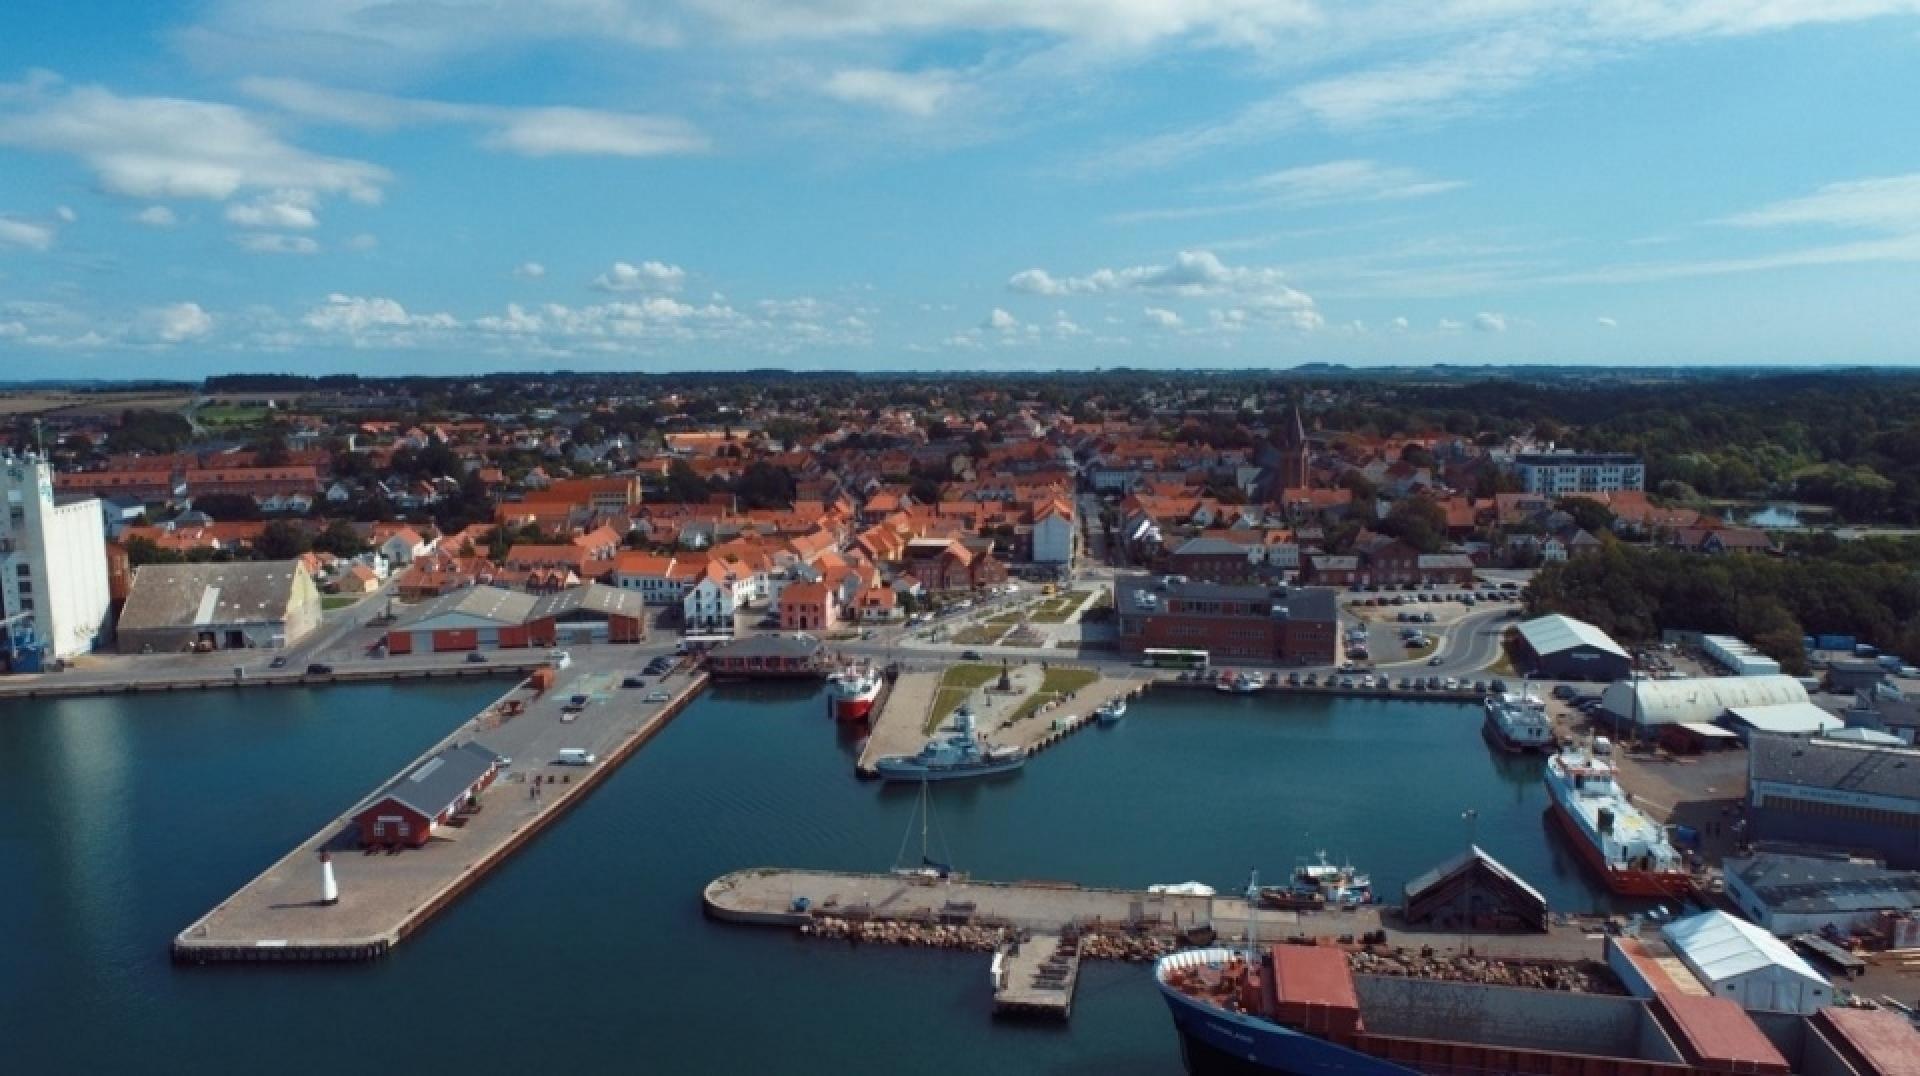 Danmarks kommende Kyst- og Lystfiskercenter, der skal ligge her på Assens havn, skal spille sammen med det gamle pakhus og havnens øvrige faciliteter. Foto: Assens Kommune